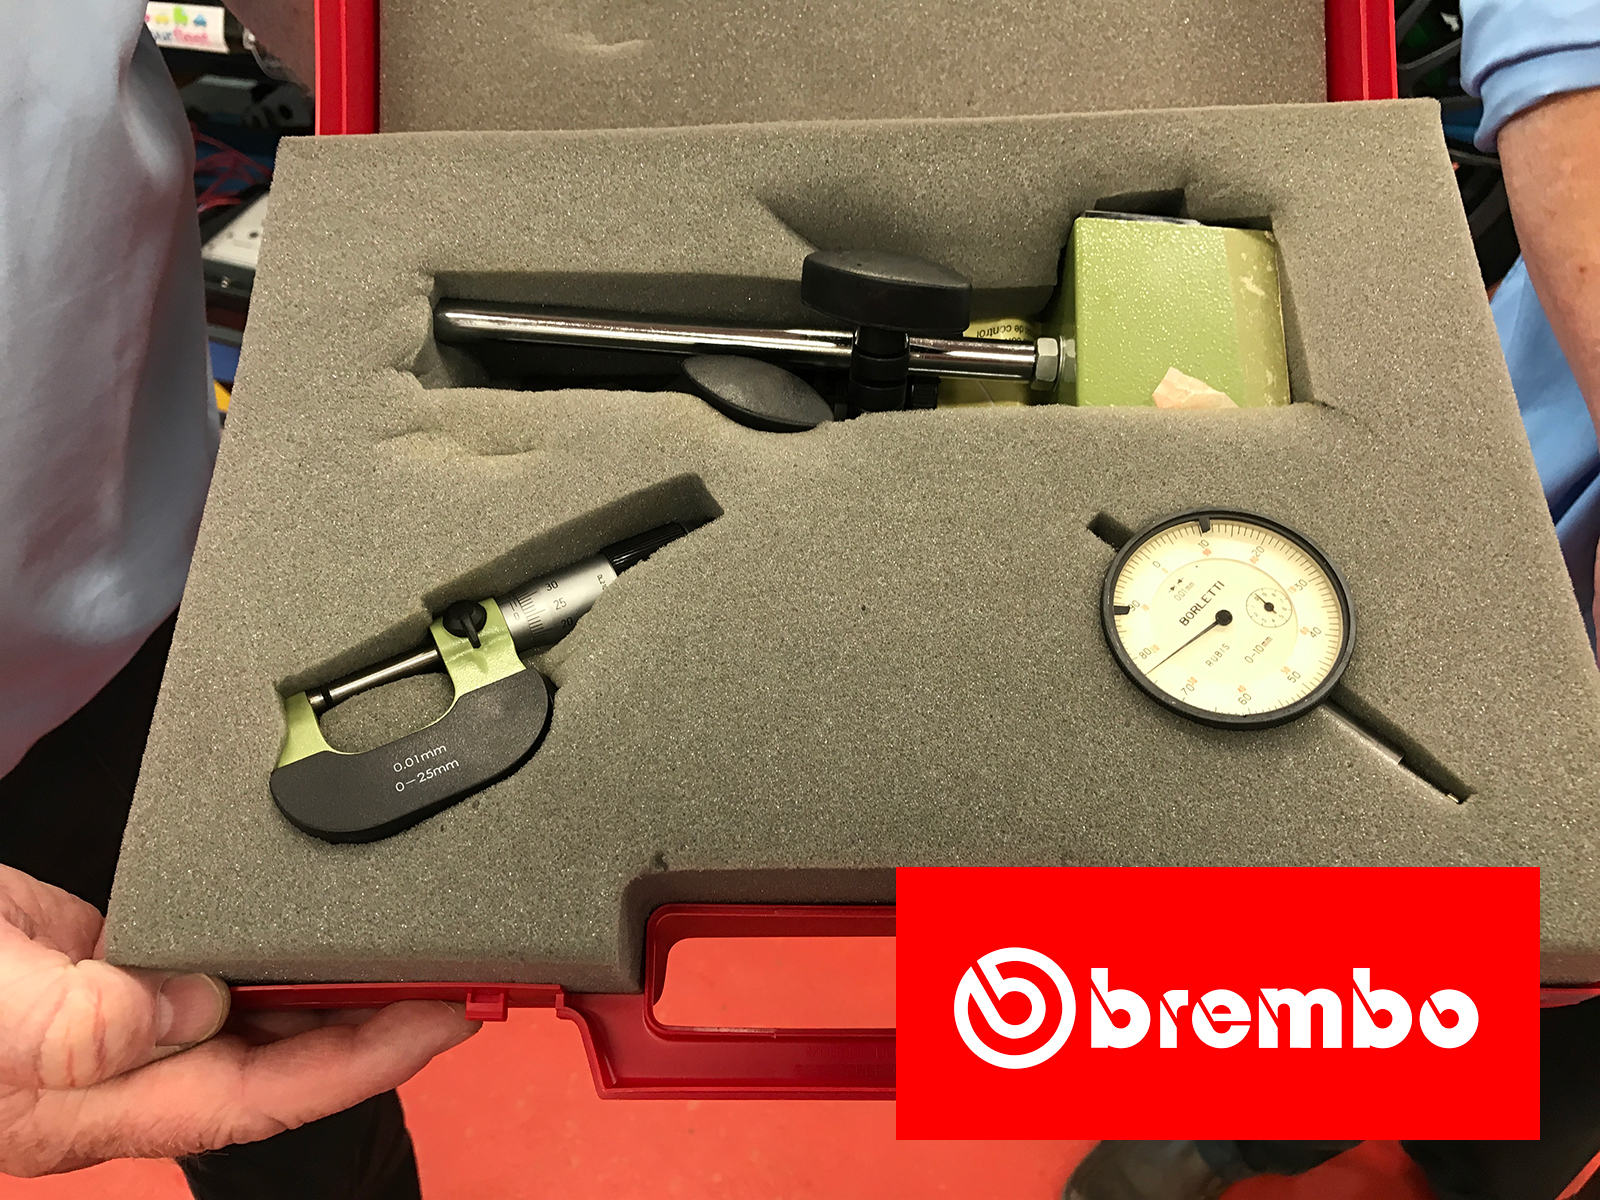 The prize - a Brembo Brake Metrology Kit